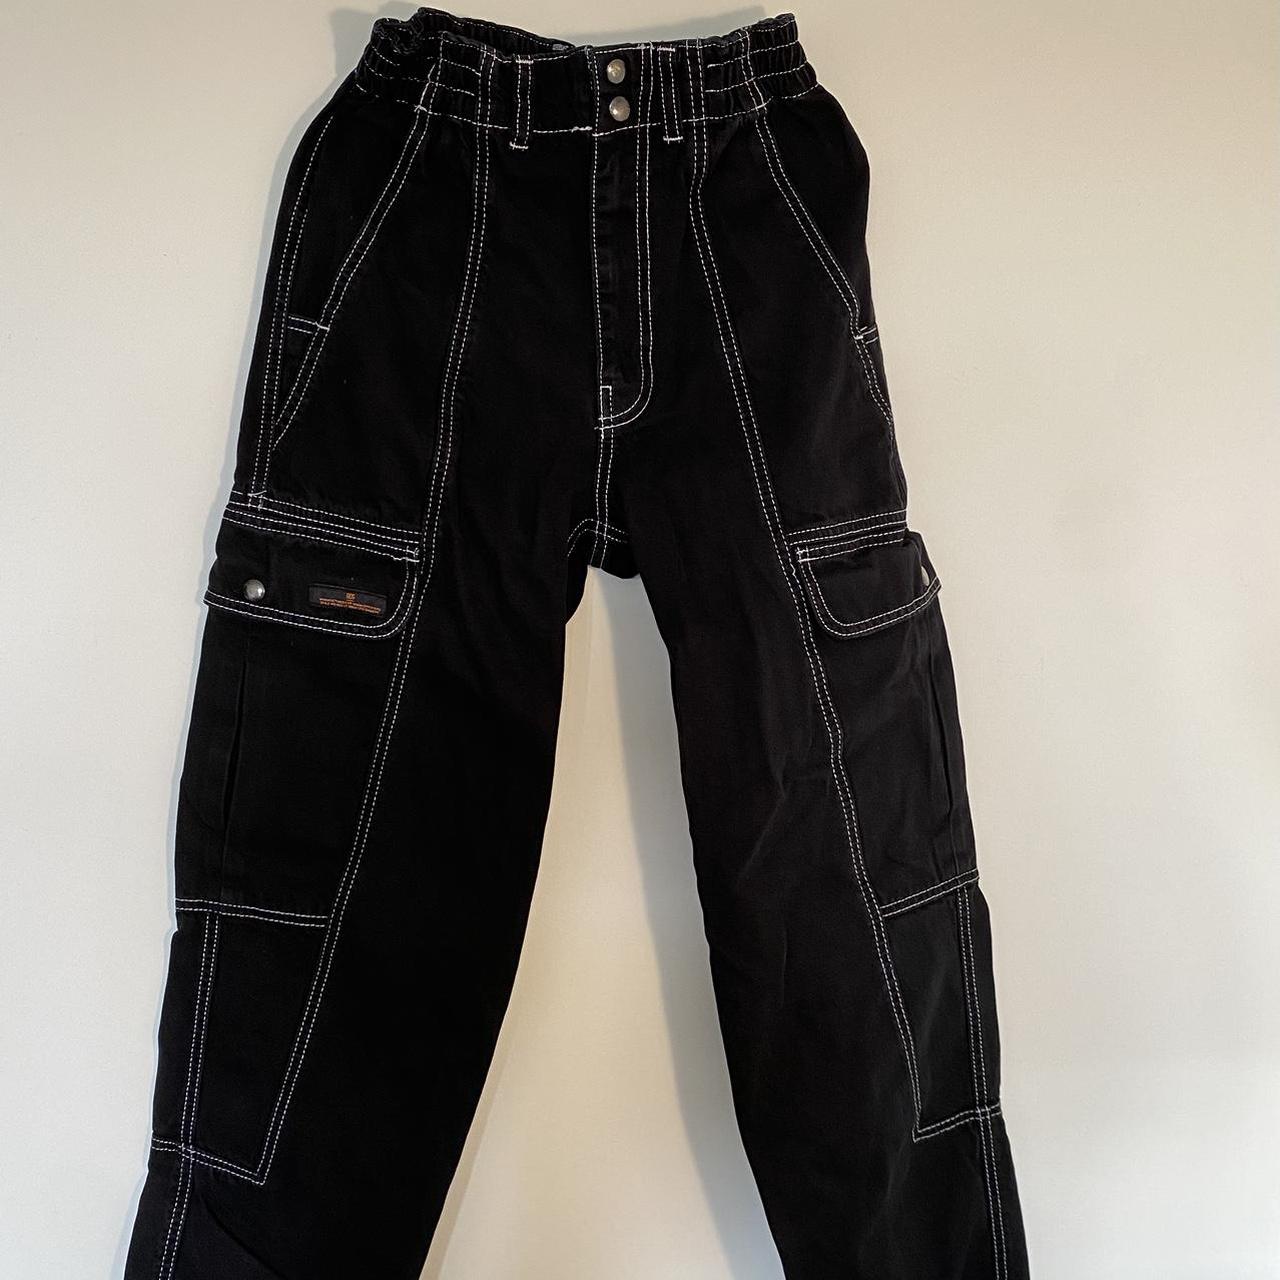 H&M Canvas Black Cargo Pants White seam details - Depop